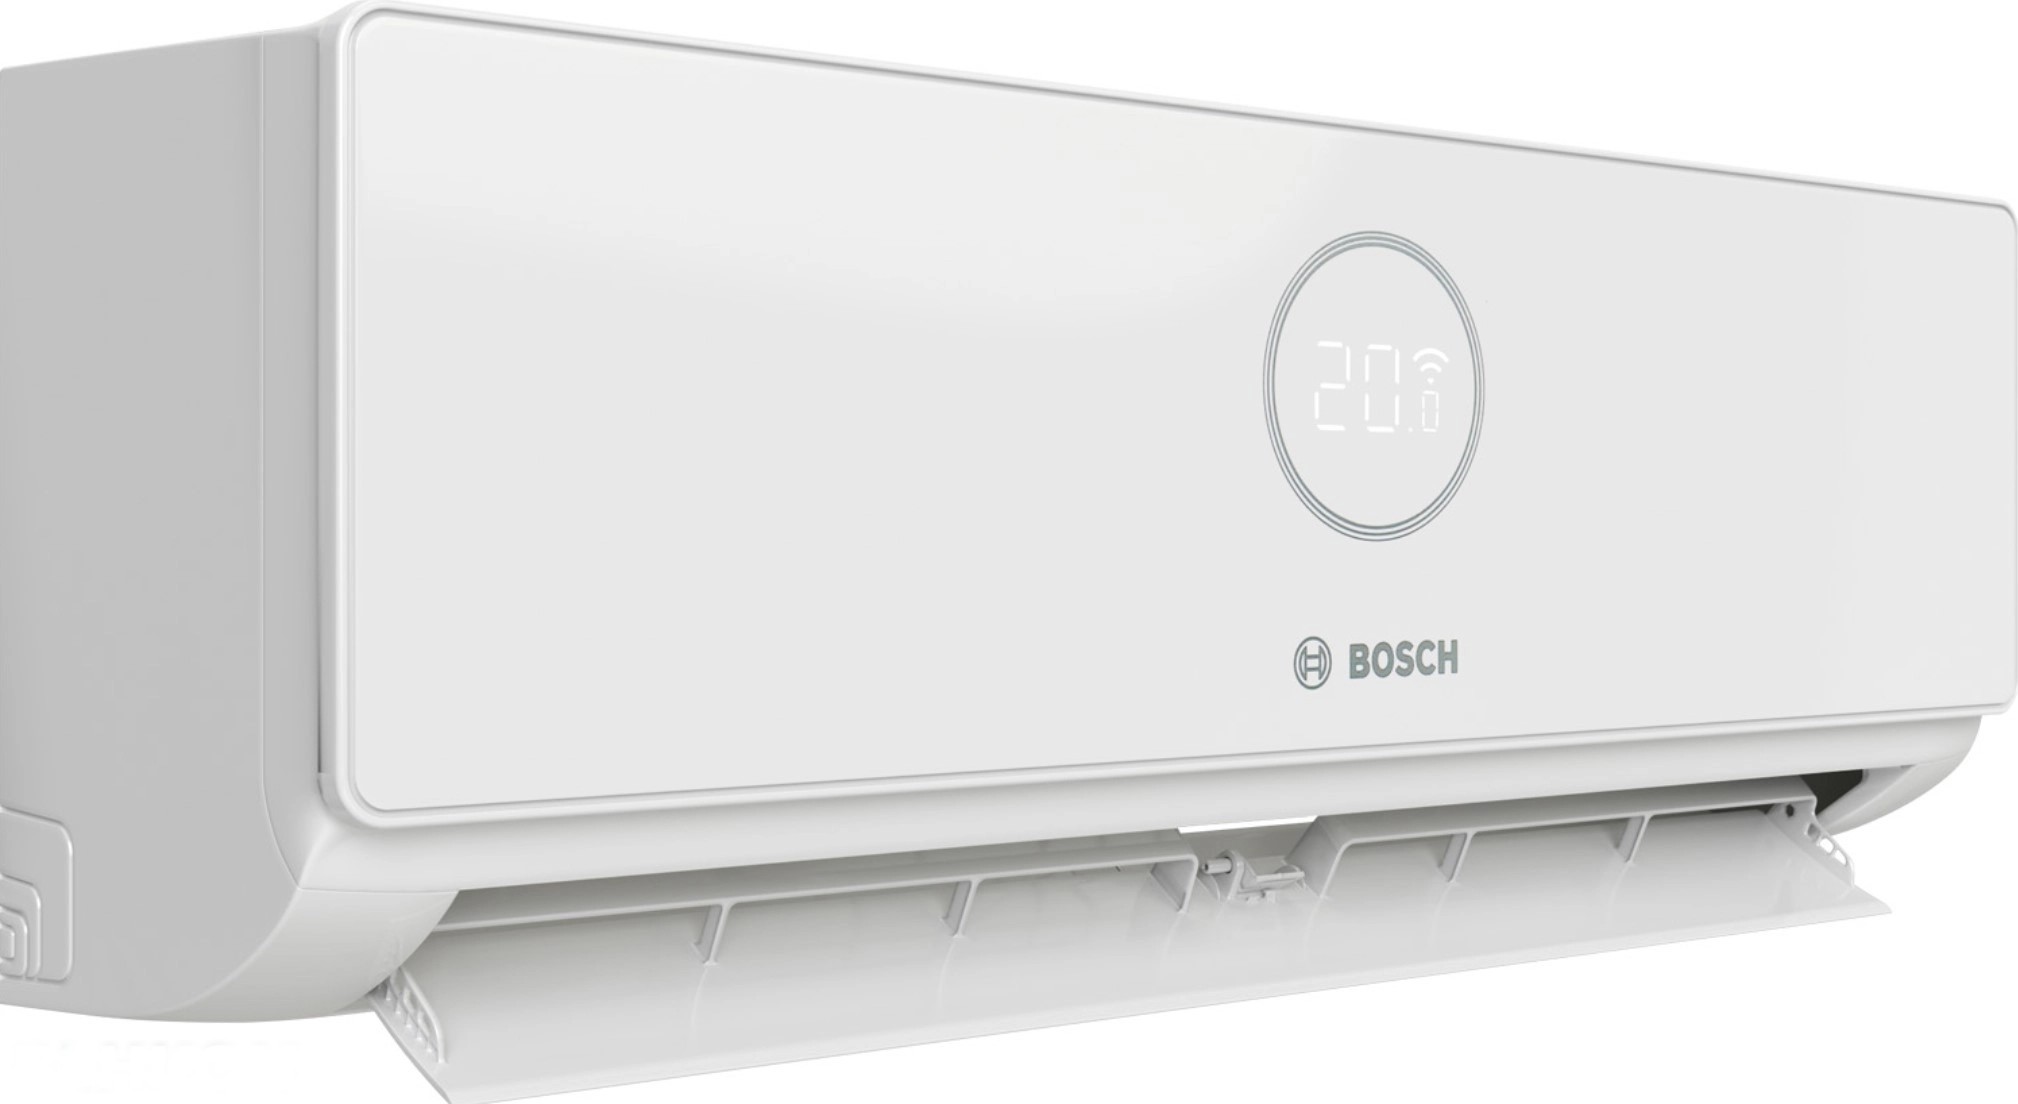 продаём Bosch CL3000iU W 70 E, 7,0 кВт в Украине - фото 4